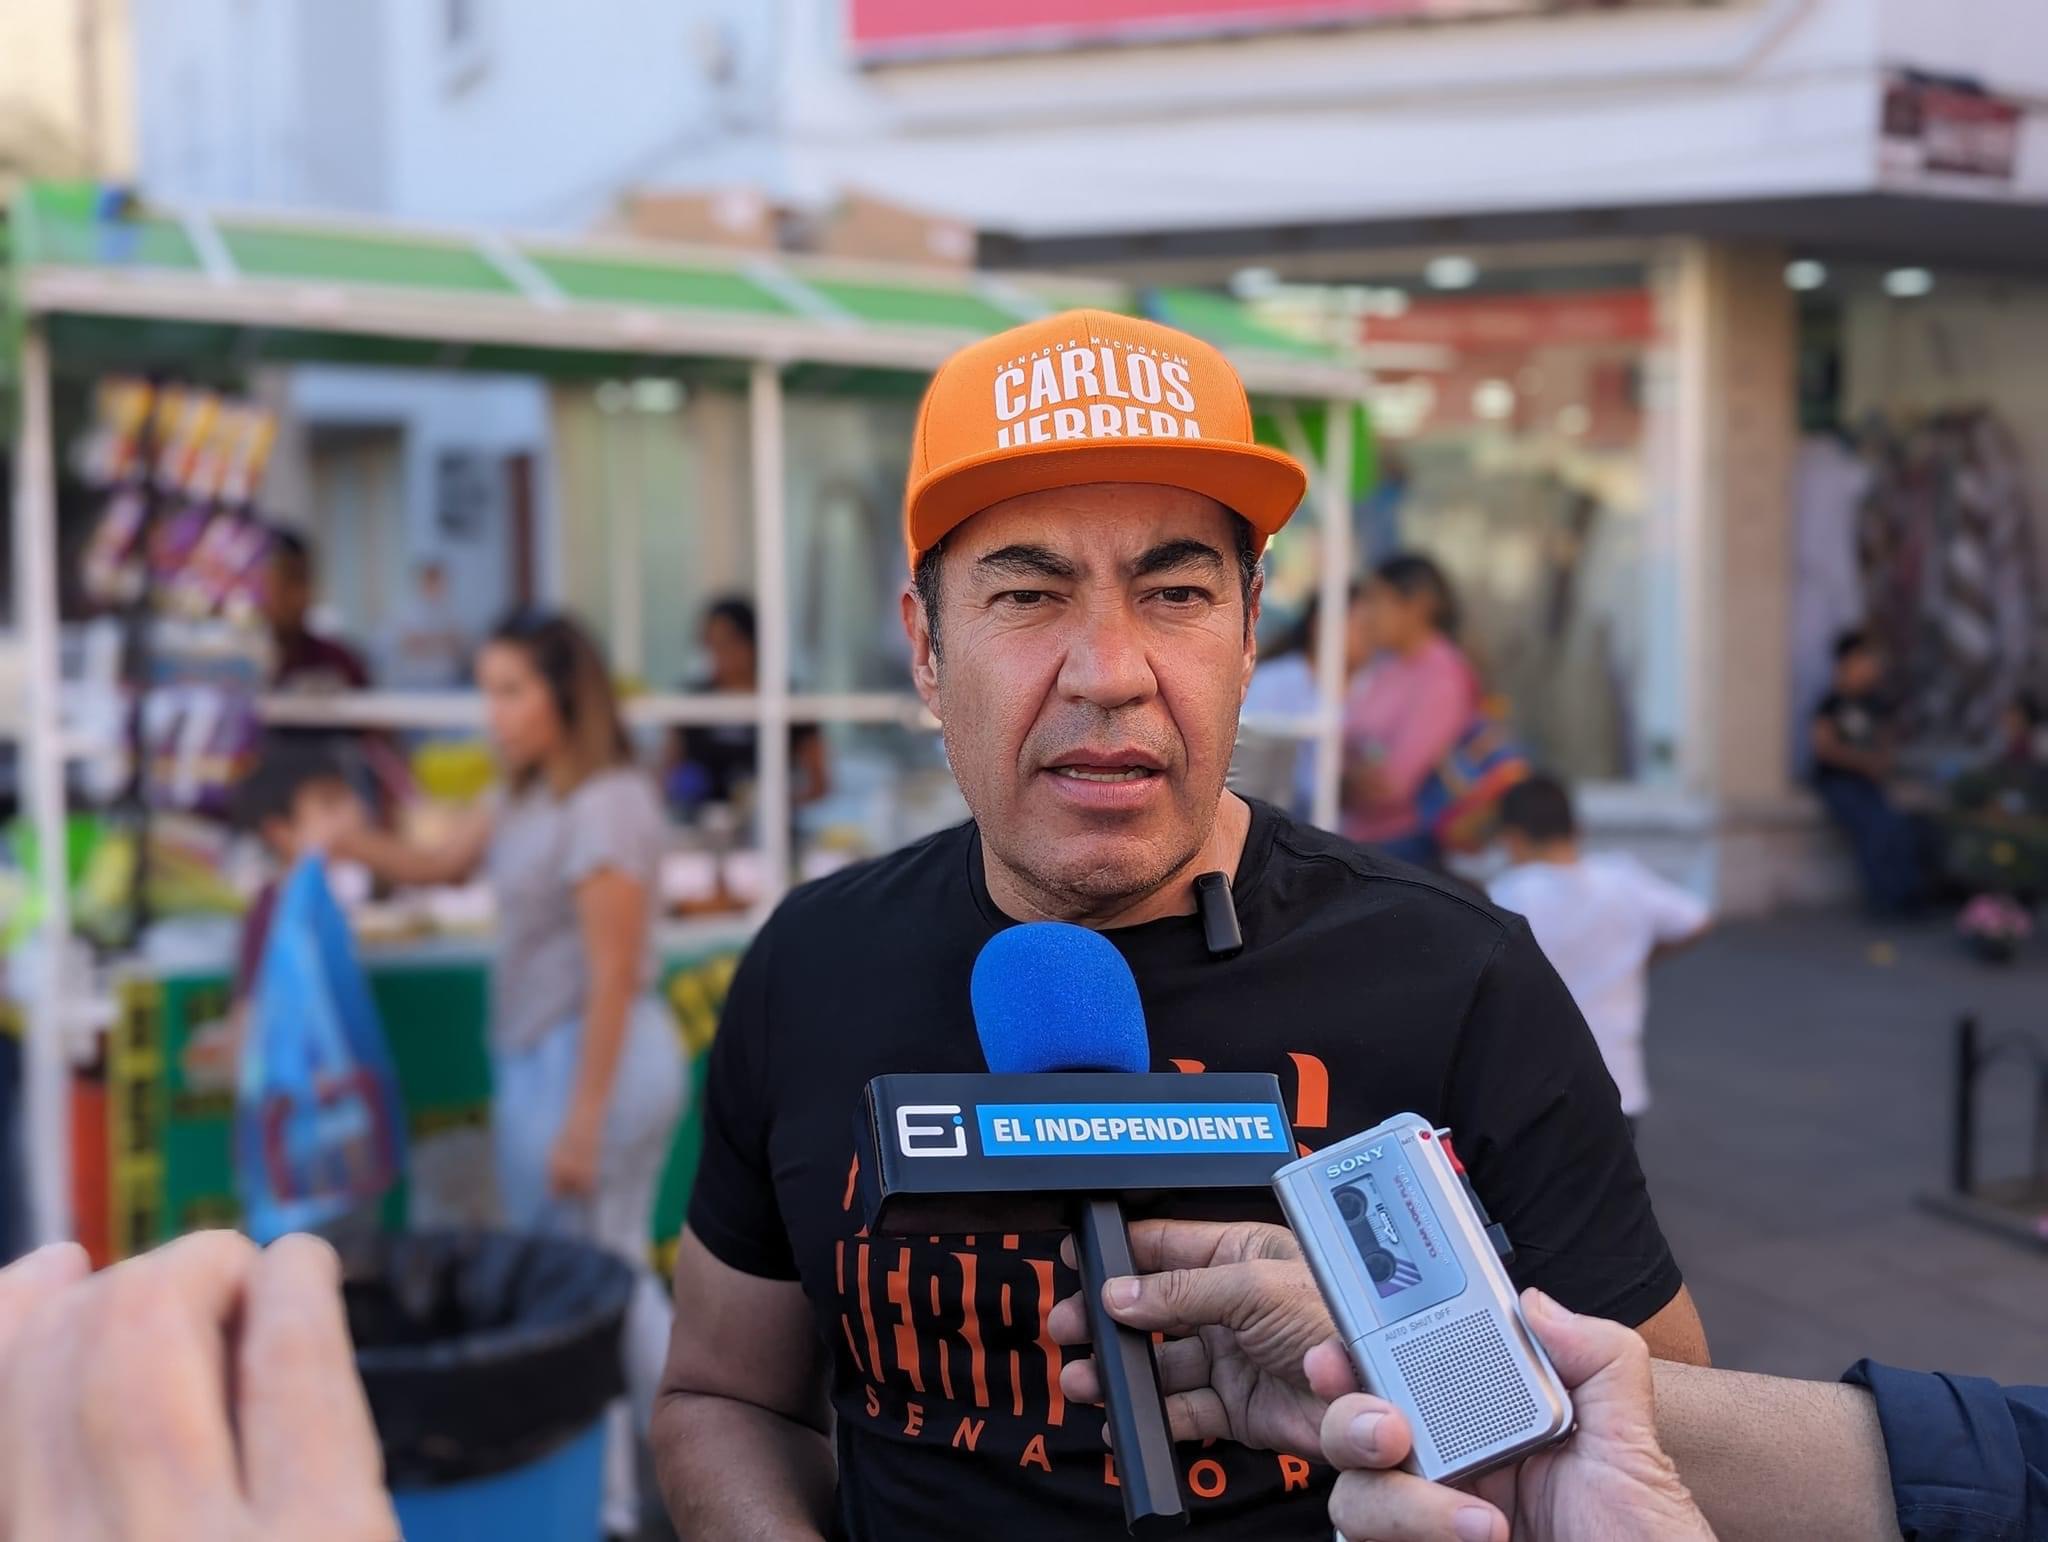 Carlos Herrera hizo recorrido en Zamora; recogió inquietudes ciudadanas en camino al Senado